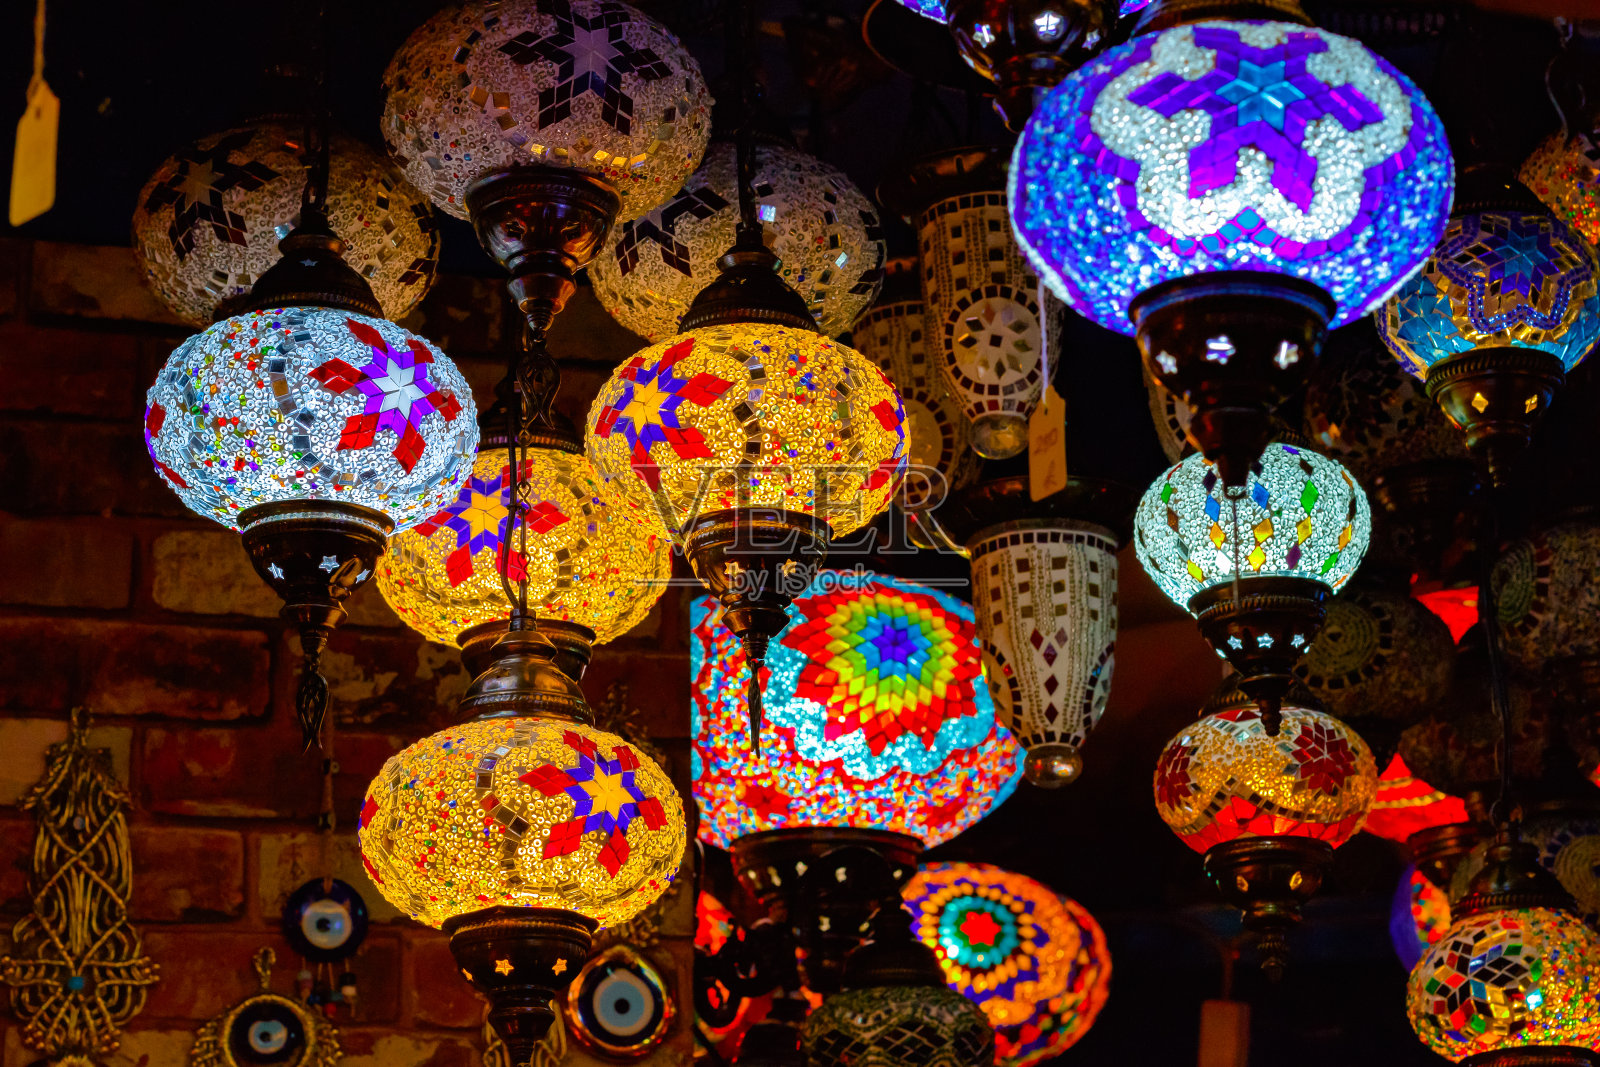 土耳其或摩洛哥玻璃茶灯悬挂灯笼在卡姆登市场展出照片摄影图片